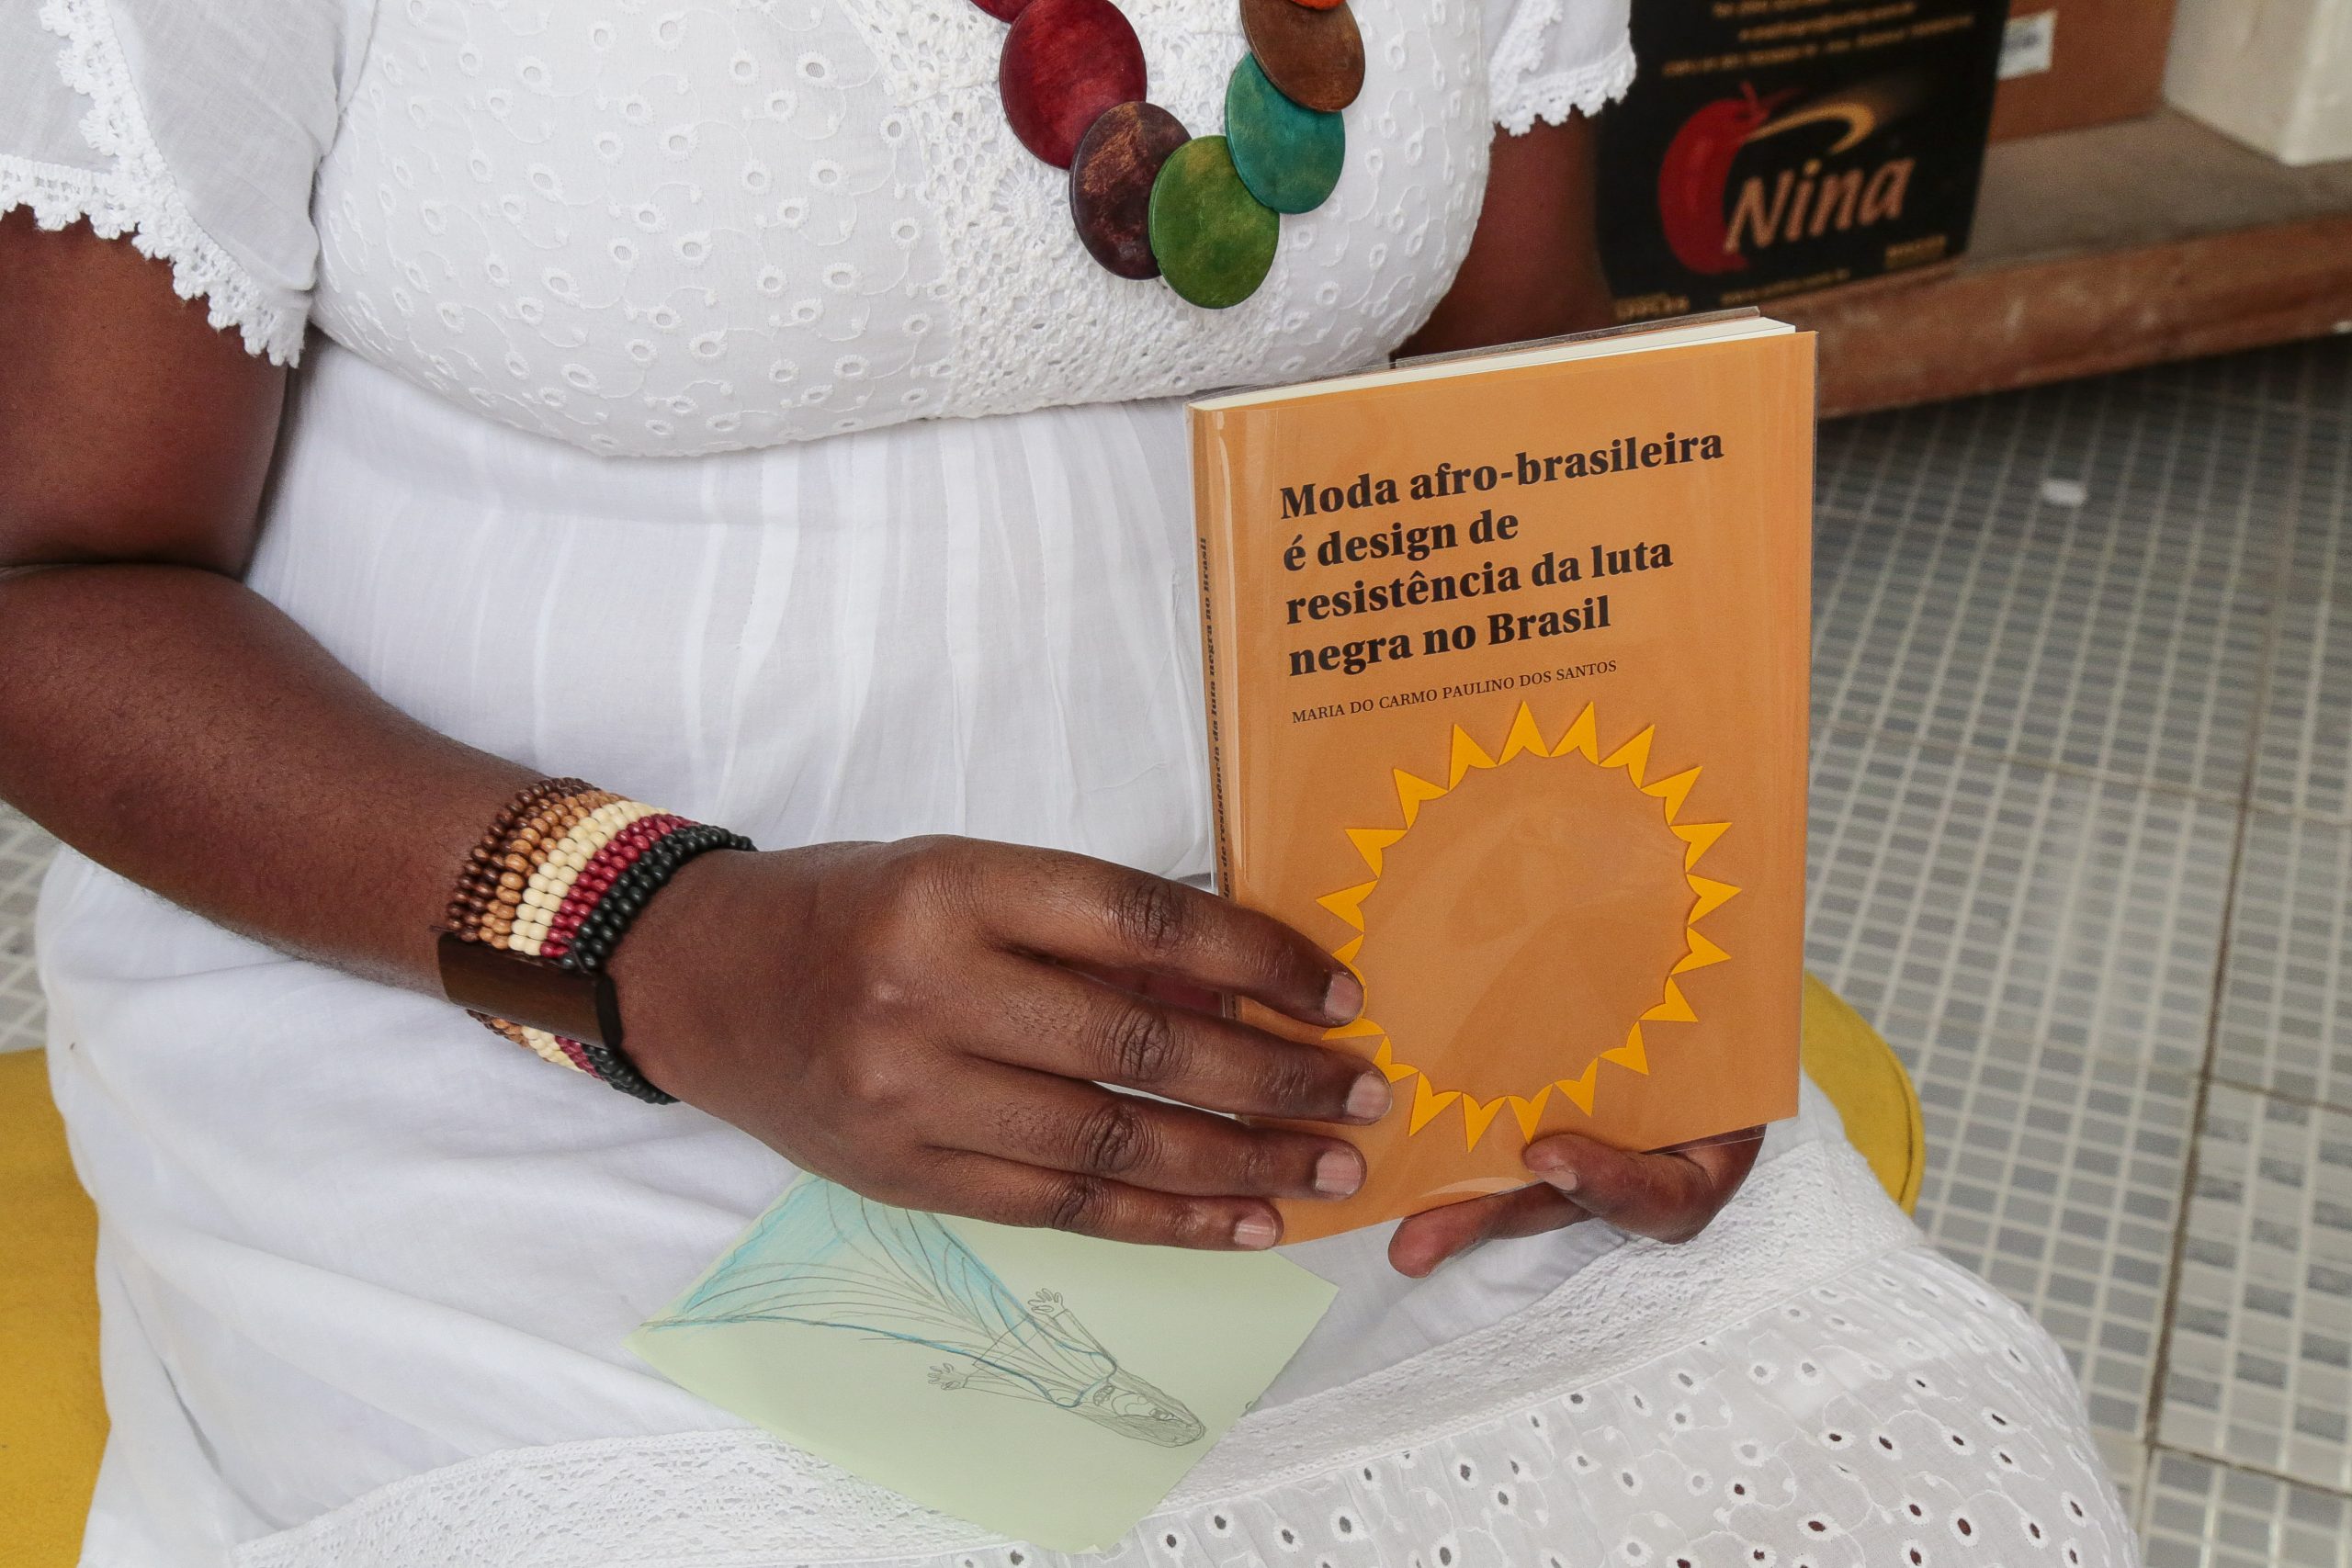 Maria do Carmo Paulino é autora do livro Moda Afro-brasileira é design de resistência da luta negra no Brasil - Foto: Marcos Santos/USP Imagens